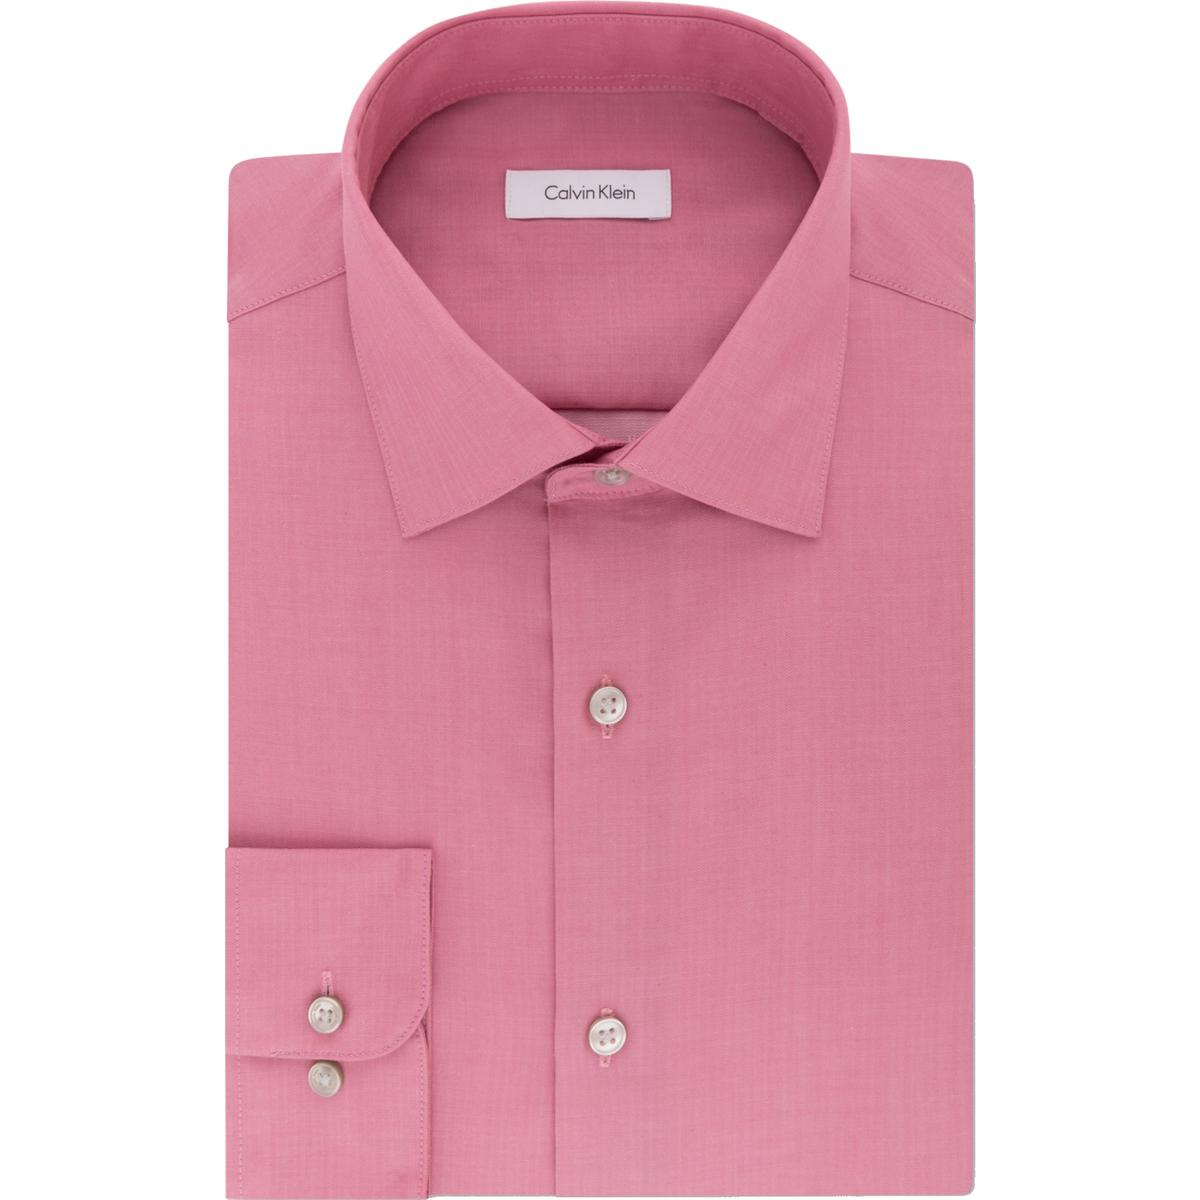 Calvin Klein Mens Pink Cotton Dress Shirt Big Tall 20 37 38 XXXXL 